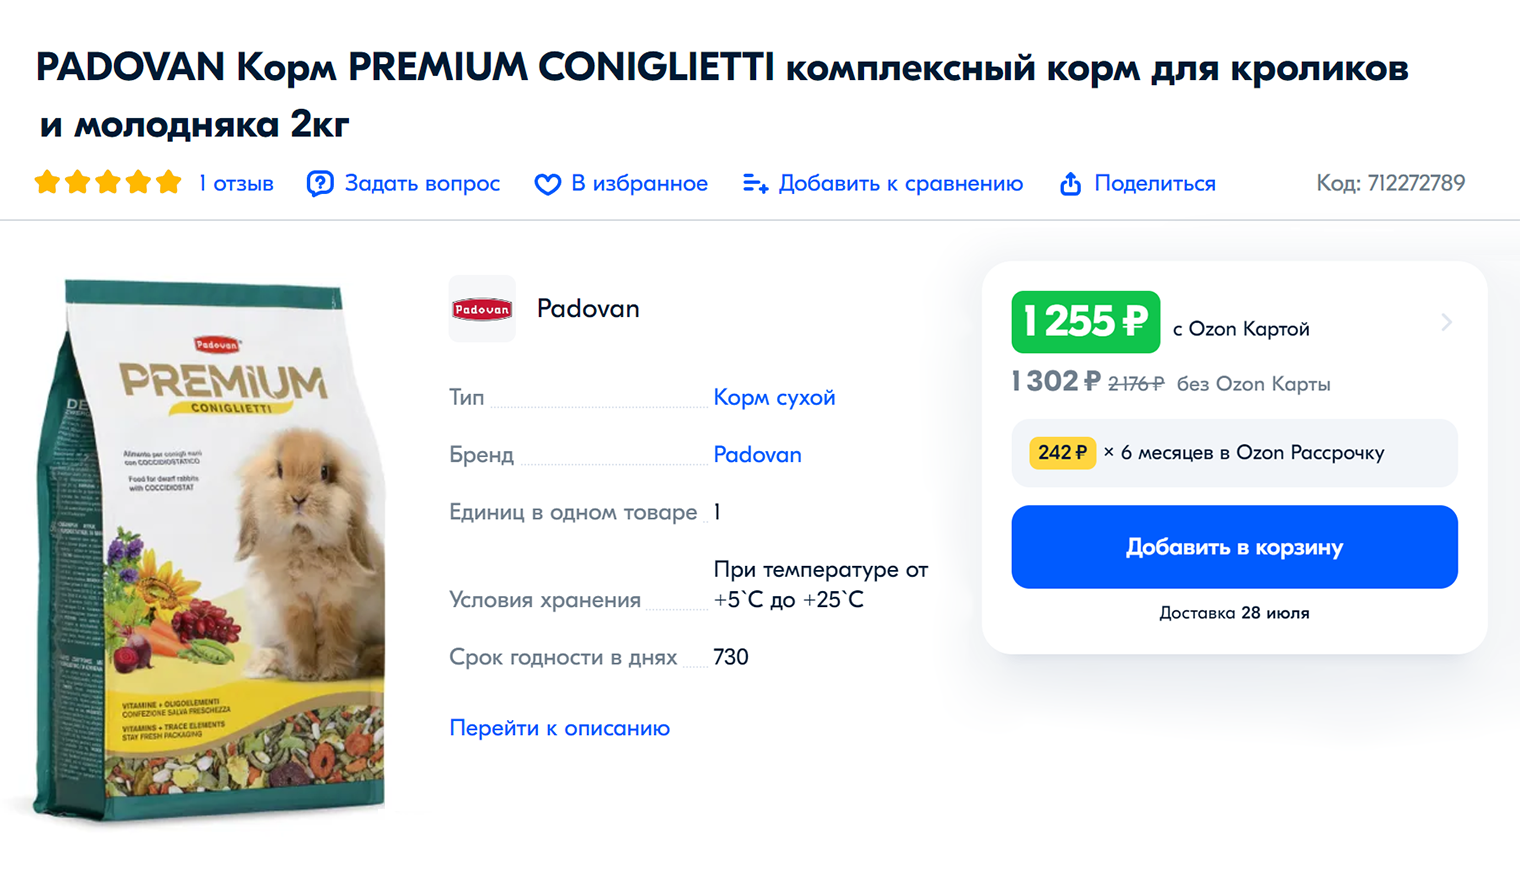 Моя Плюша ест Podavan Premium — стоимость упаковки около 1500 ₽ за 2 кг. Этого хватает на месяц. Источник: ozon.ru